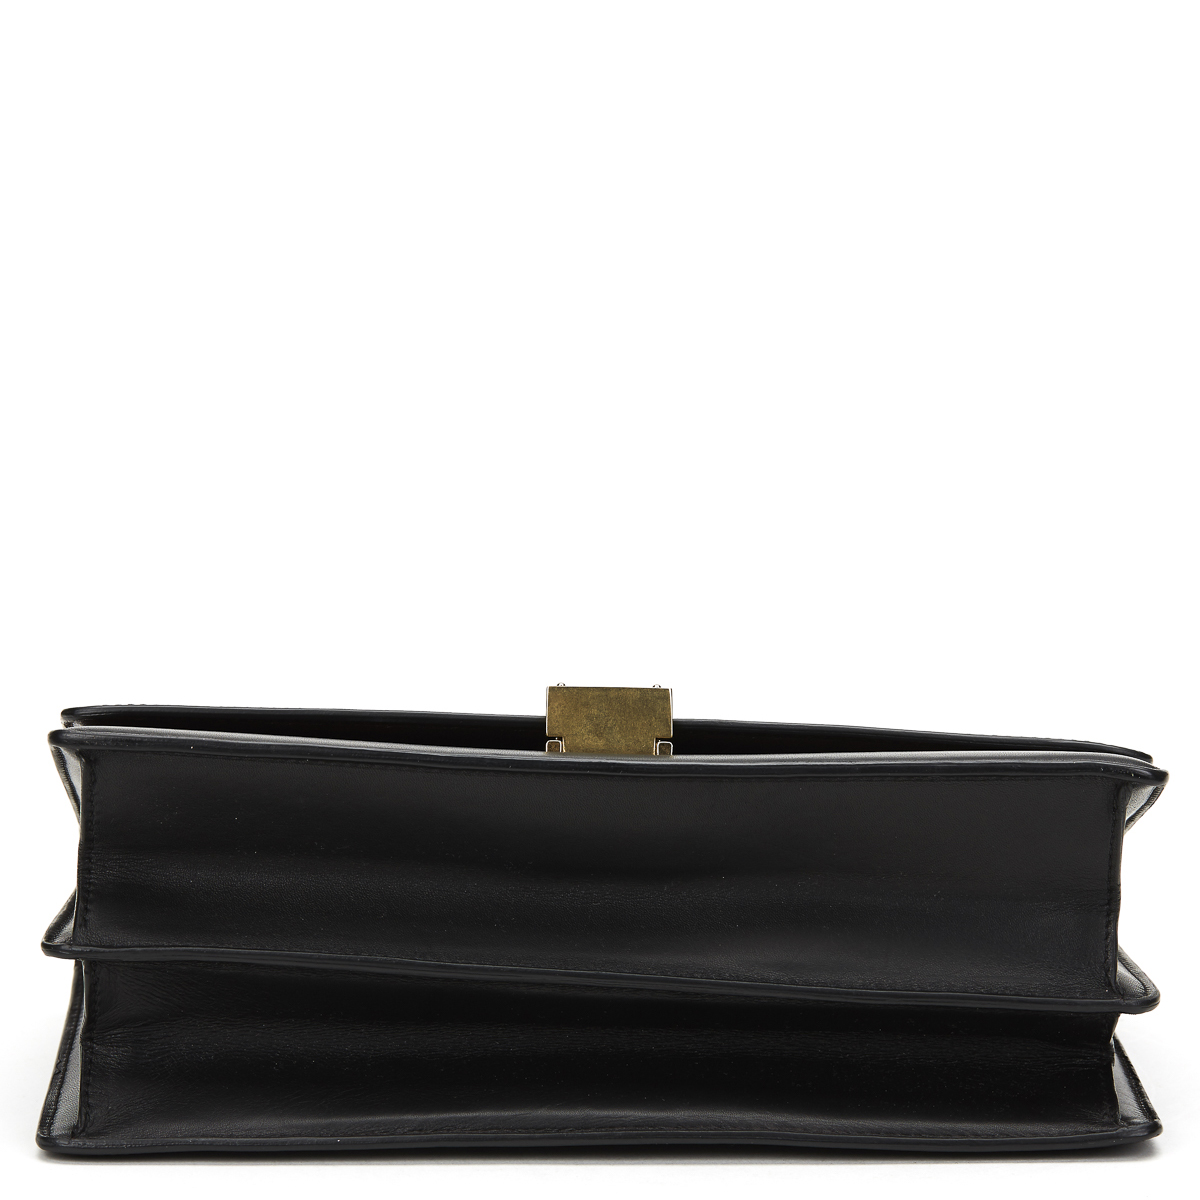 CELINE Case Flap Bag , - Black Smooth Leather Case Flap Bag   TYPE Shoulder SERIAL NUMBER F-CE- - Image 4 of 12